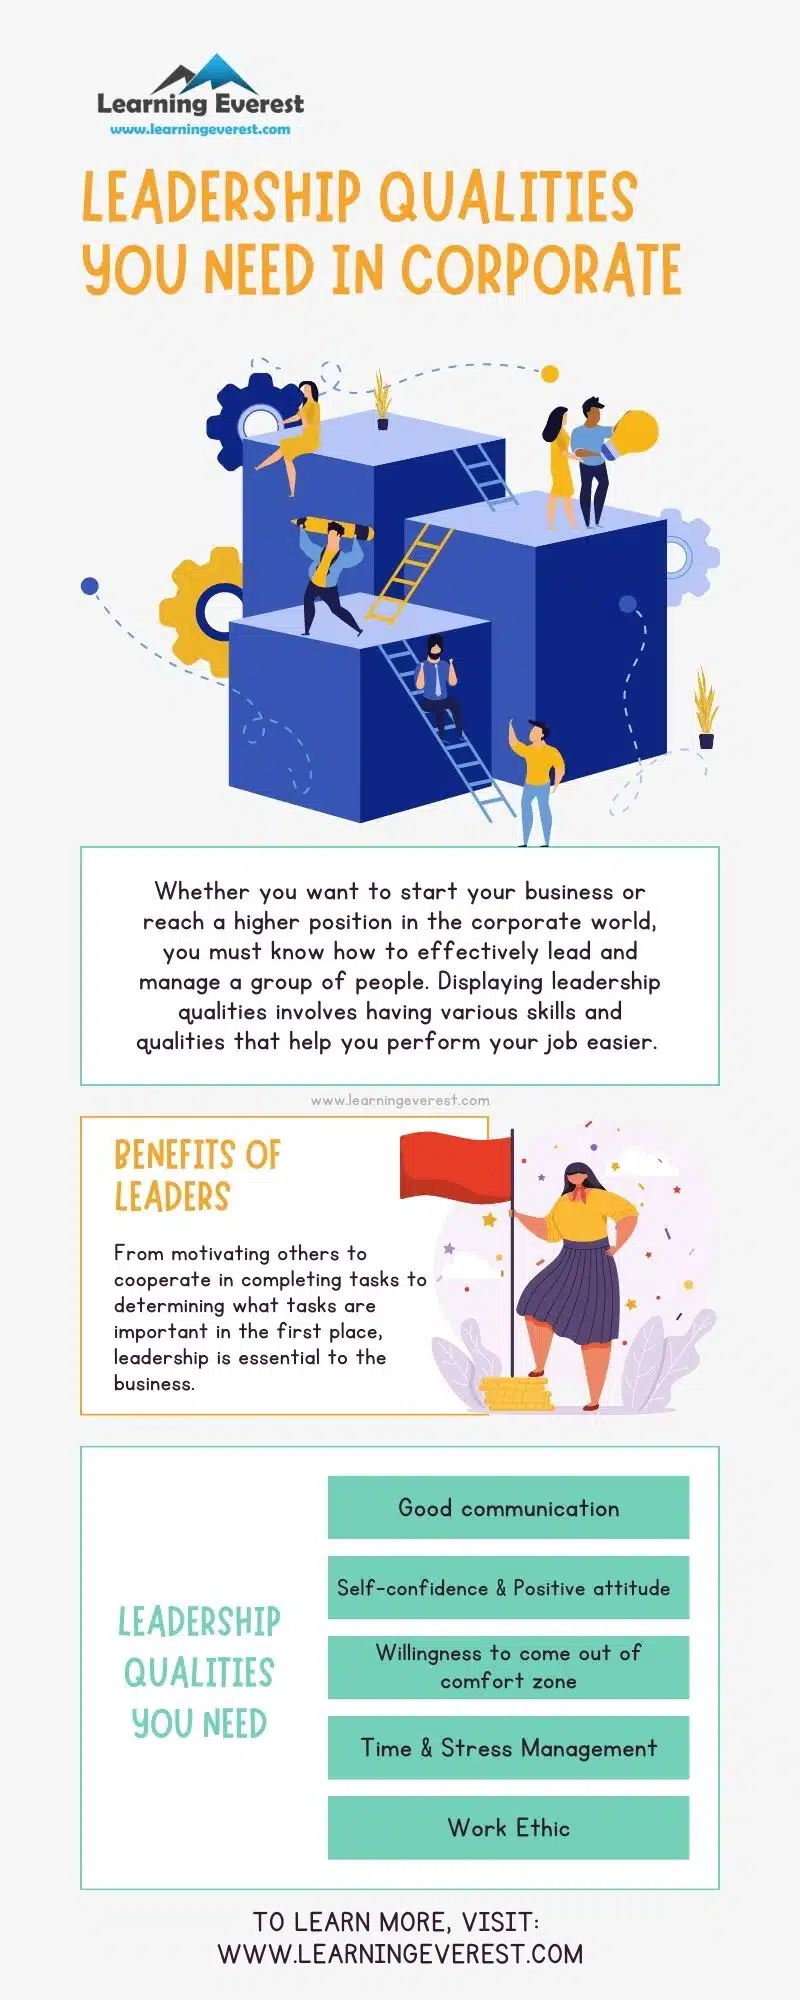 Leadership qualities in corporate